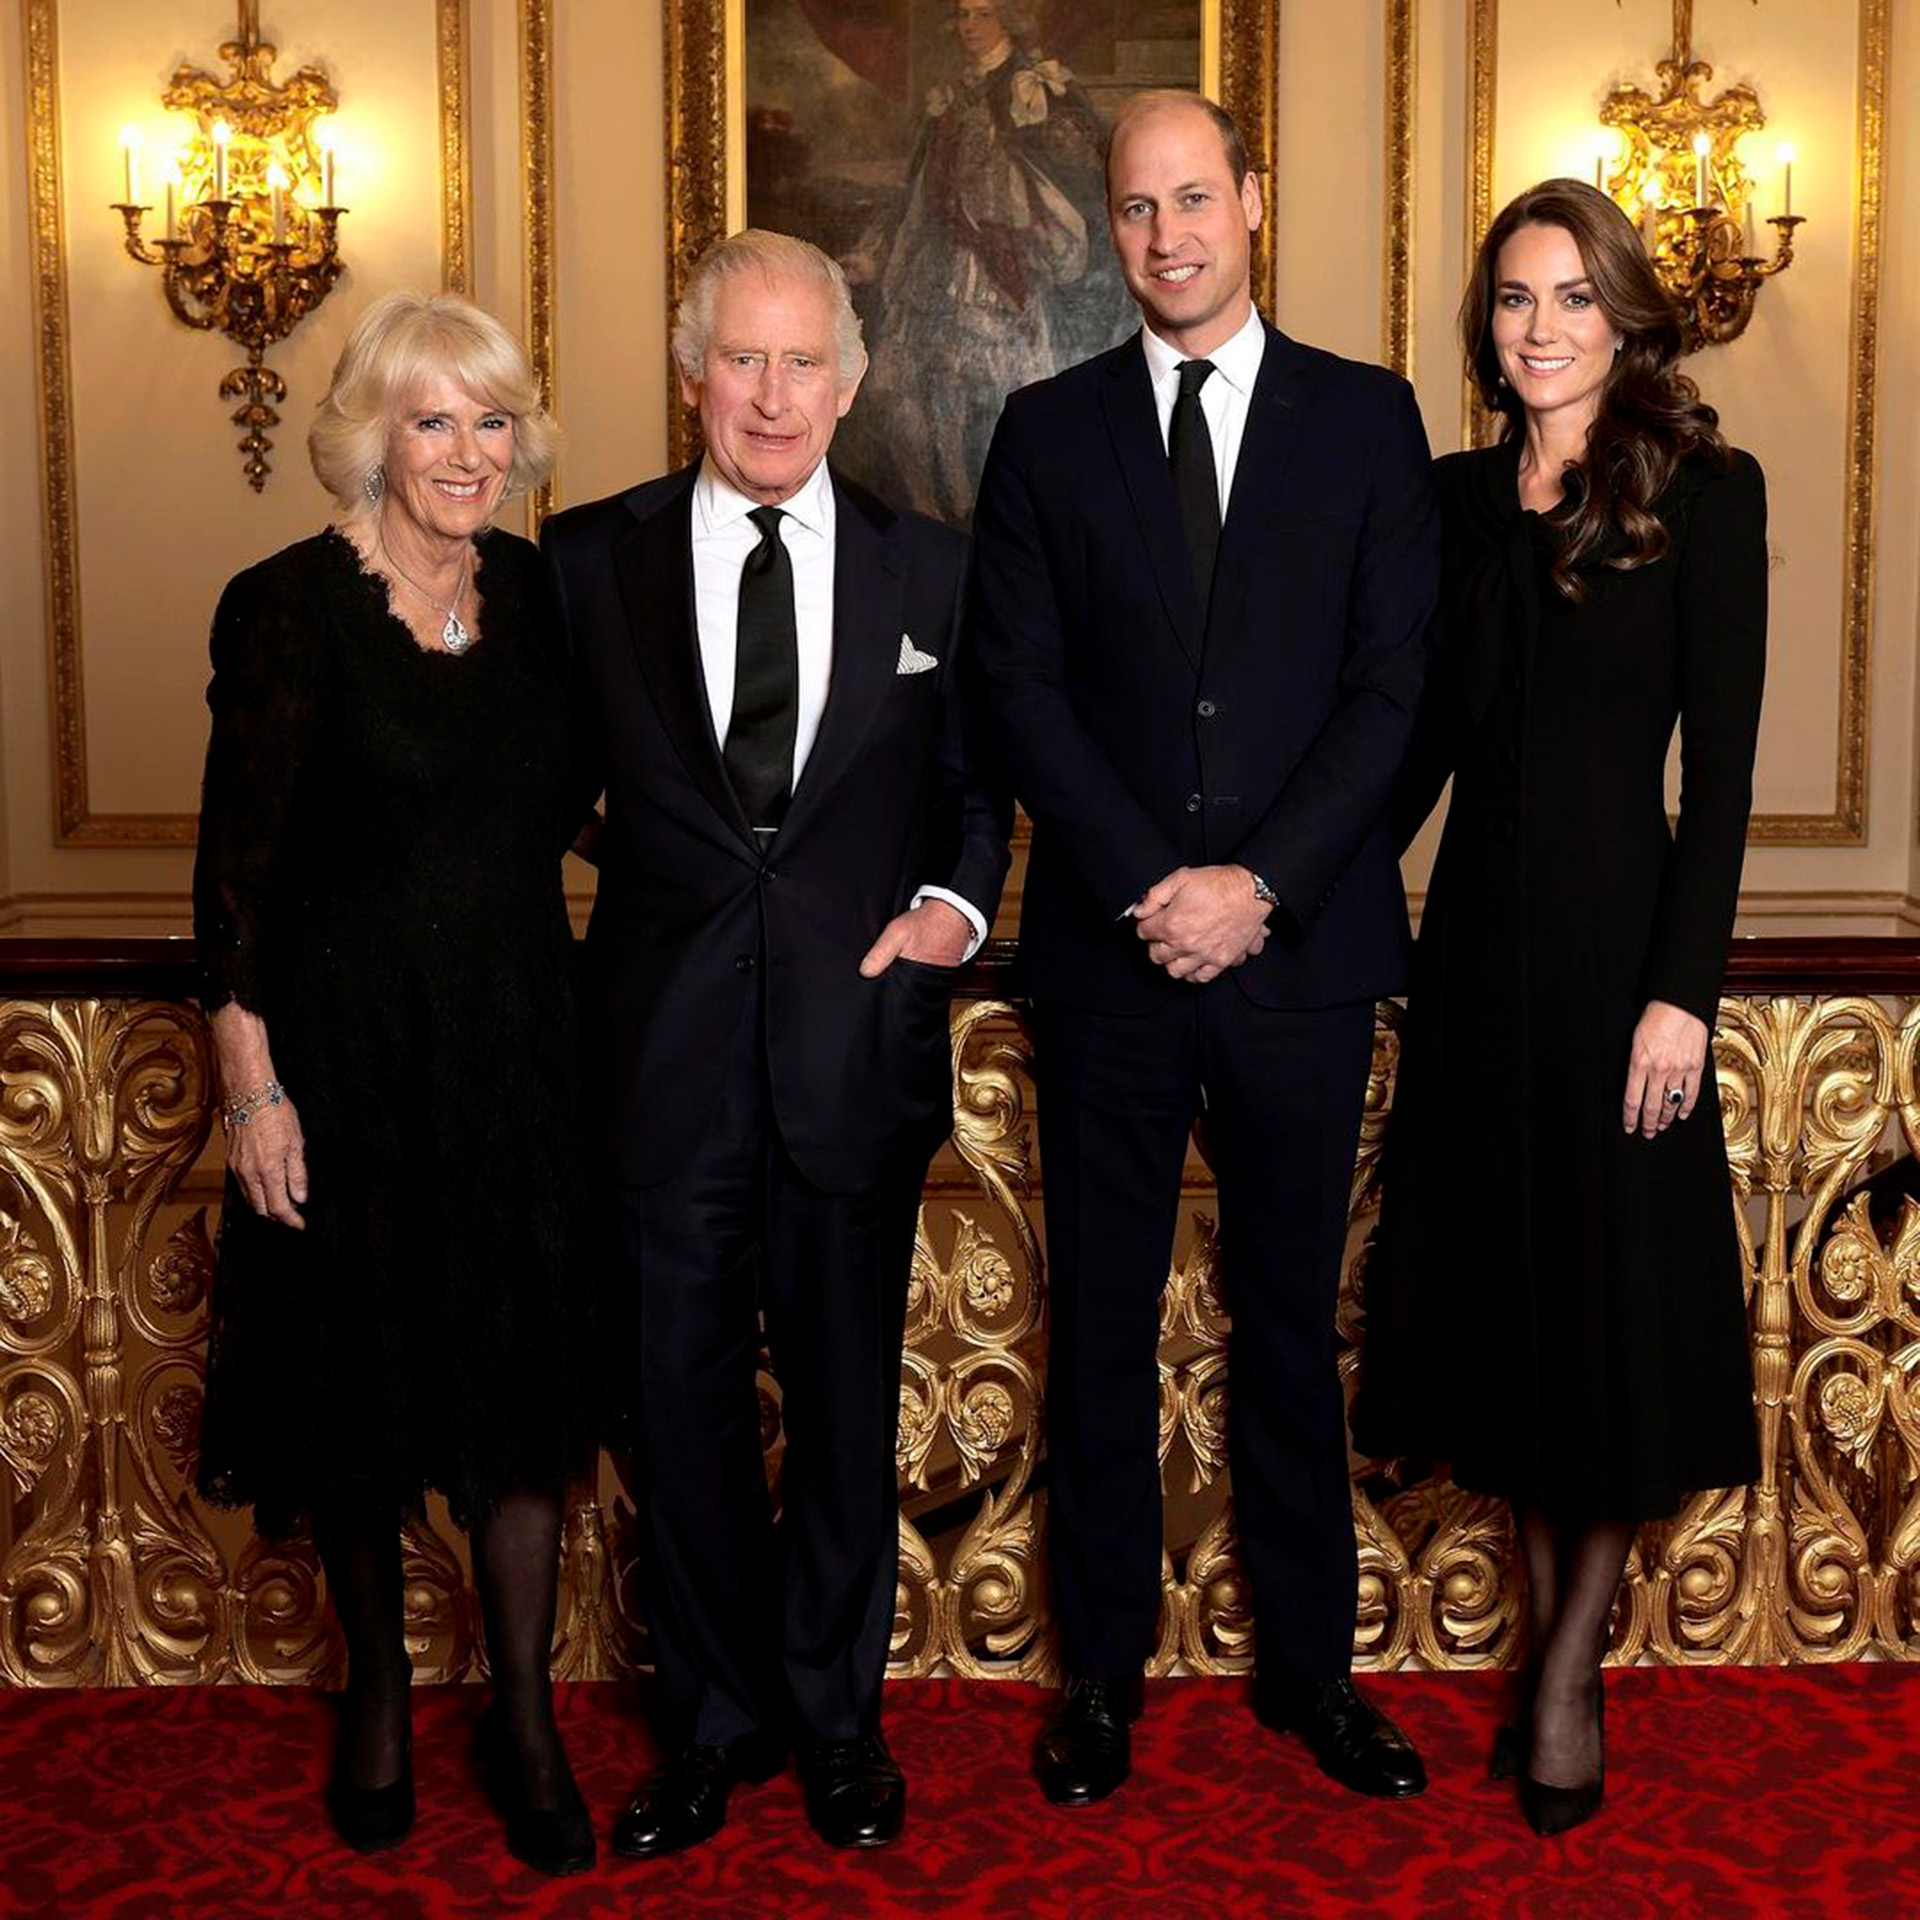 El rey Carlos II y la reina consorte con Sus Altezas Reales el príncipe y la princesa de Gales. Una fotografía tomada en el Palacio de Buckingham el 18 de septiembre (@chrisjacksongetty)